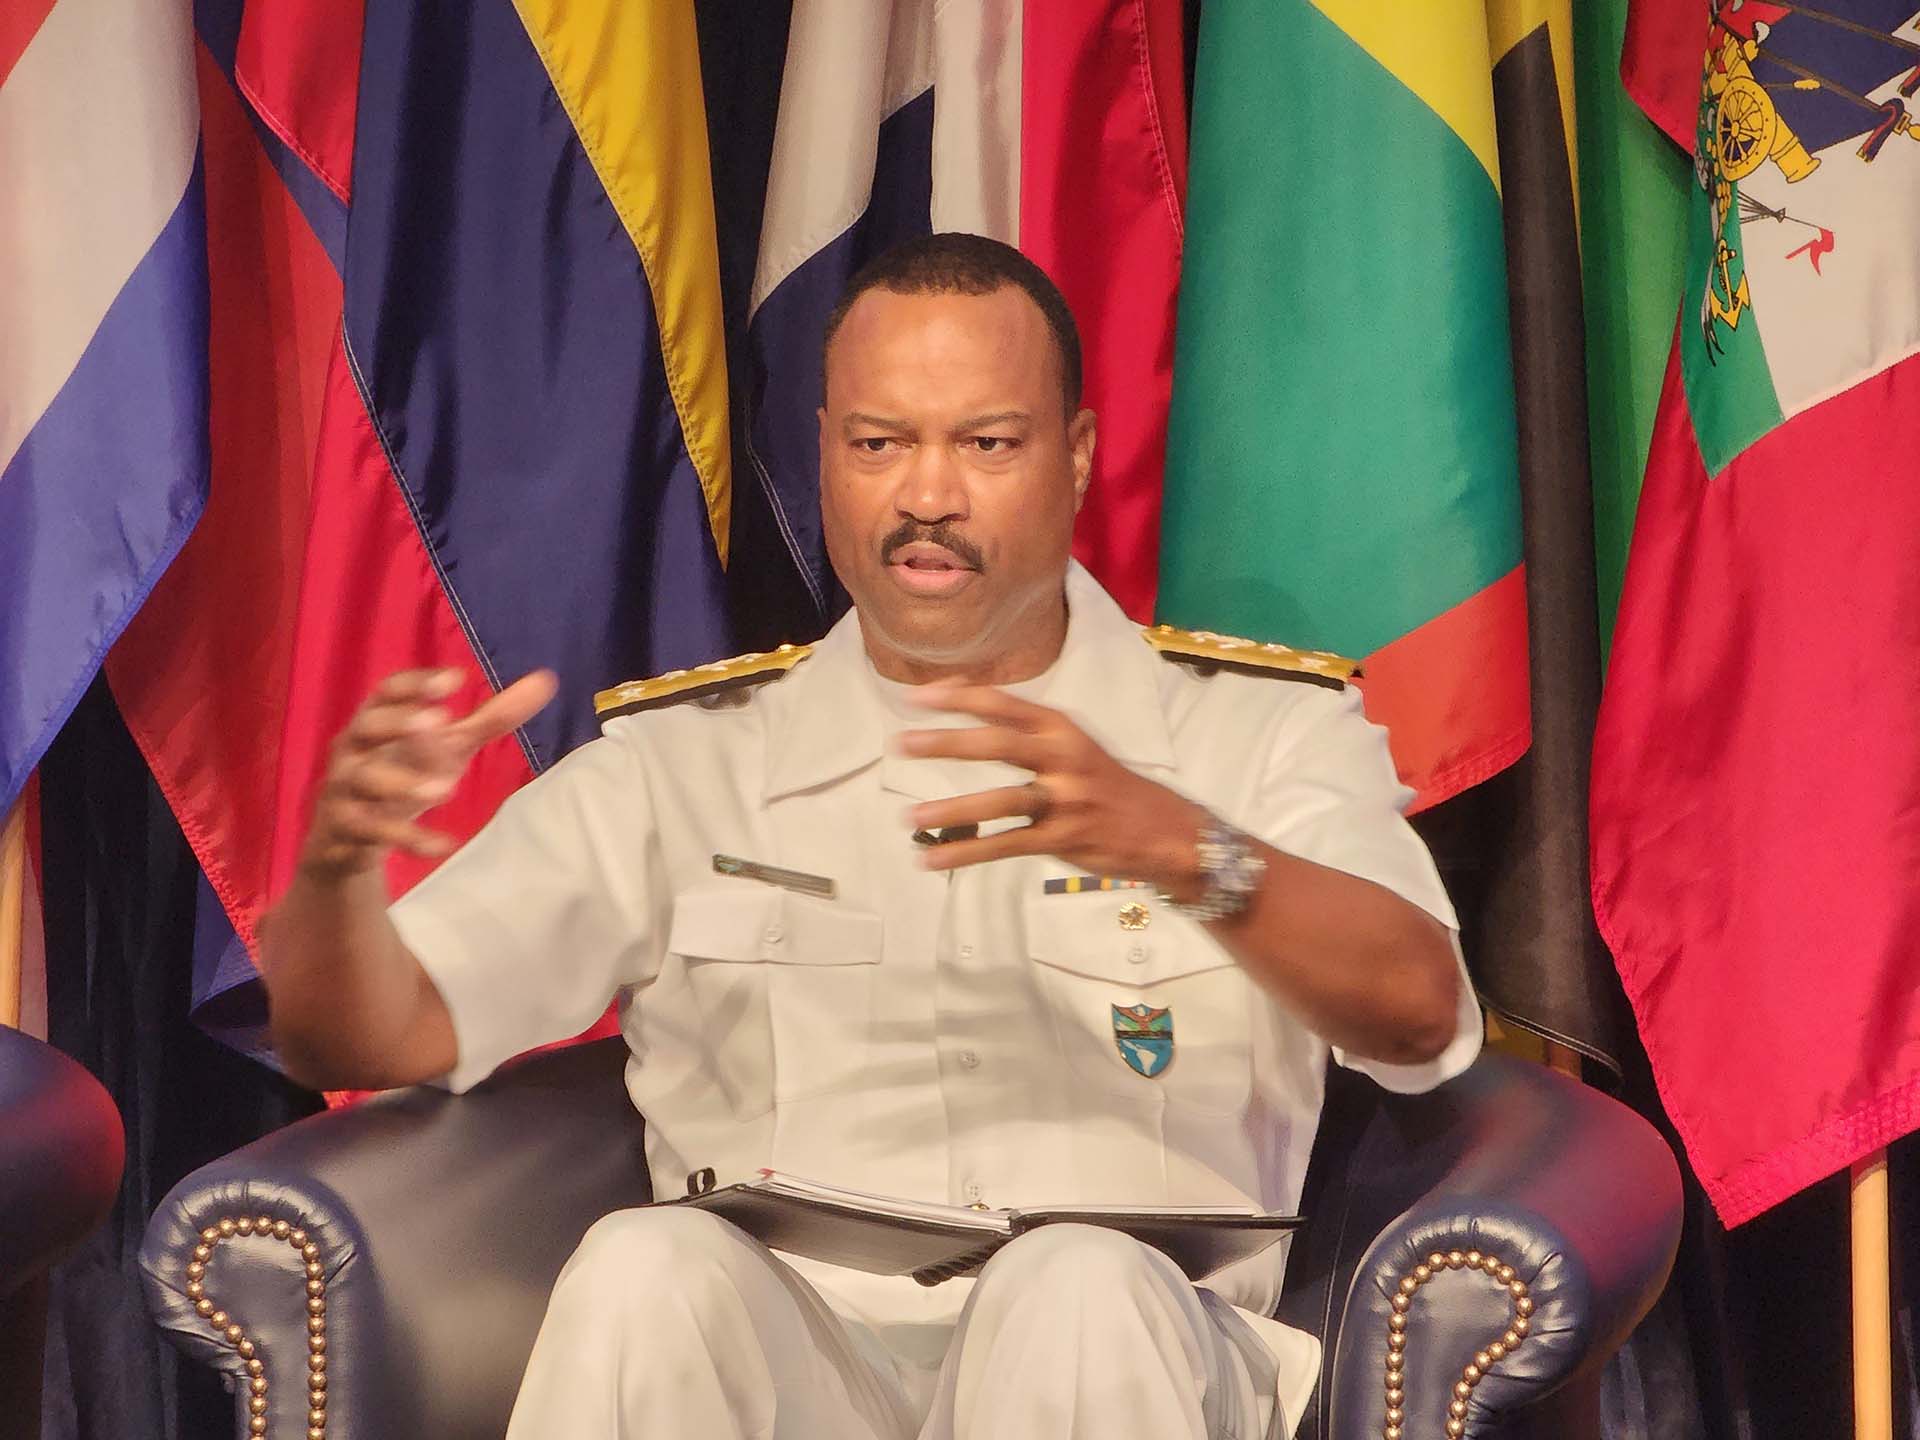 El vicealmirante Alvin Holsey, subcomandante militar del Comando Sur de los Estados Unidos, participó de la conferencia (Martin Films)